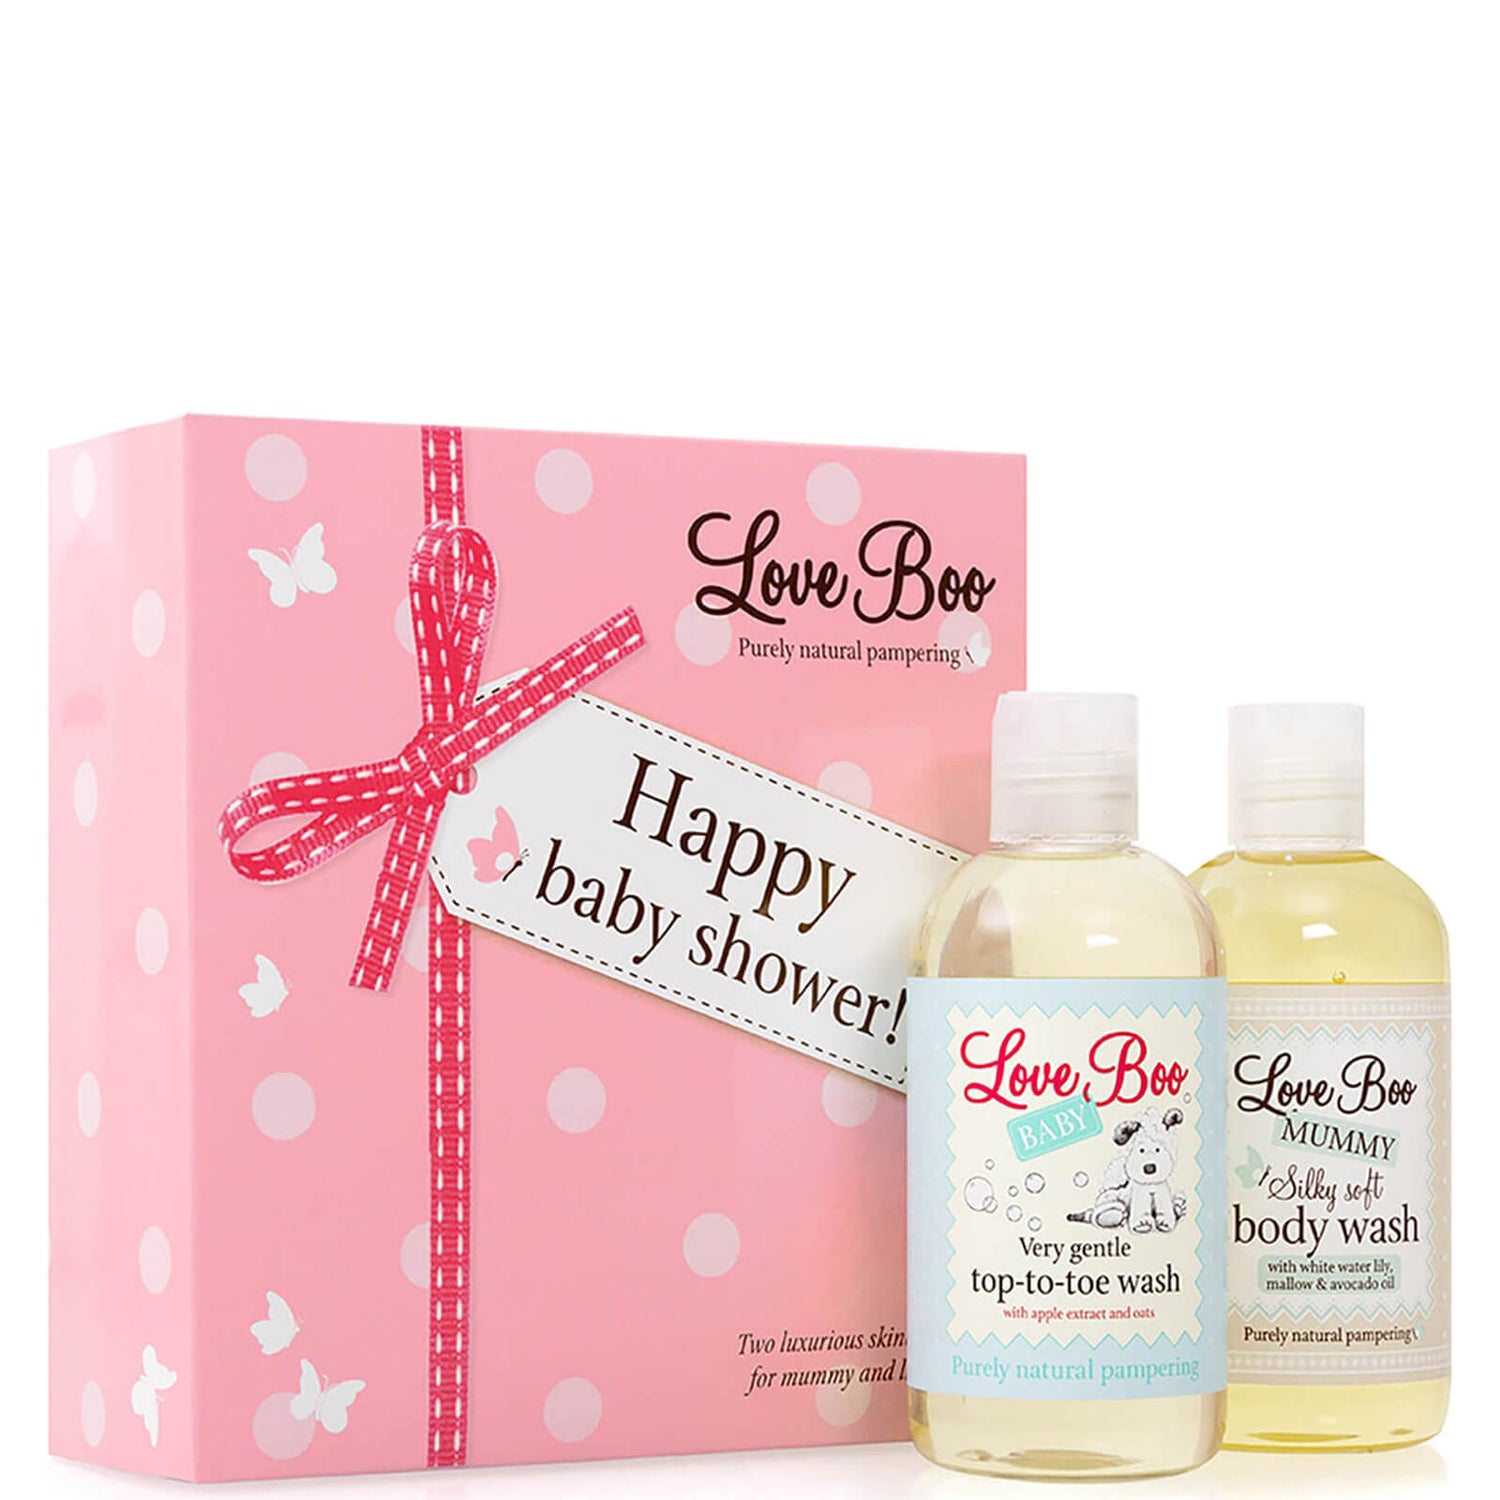 Набор средств для купания малыша Love Boo Happy Baby Shower - Body Wash and Top To Toe